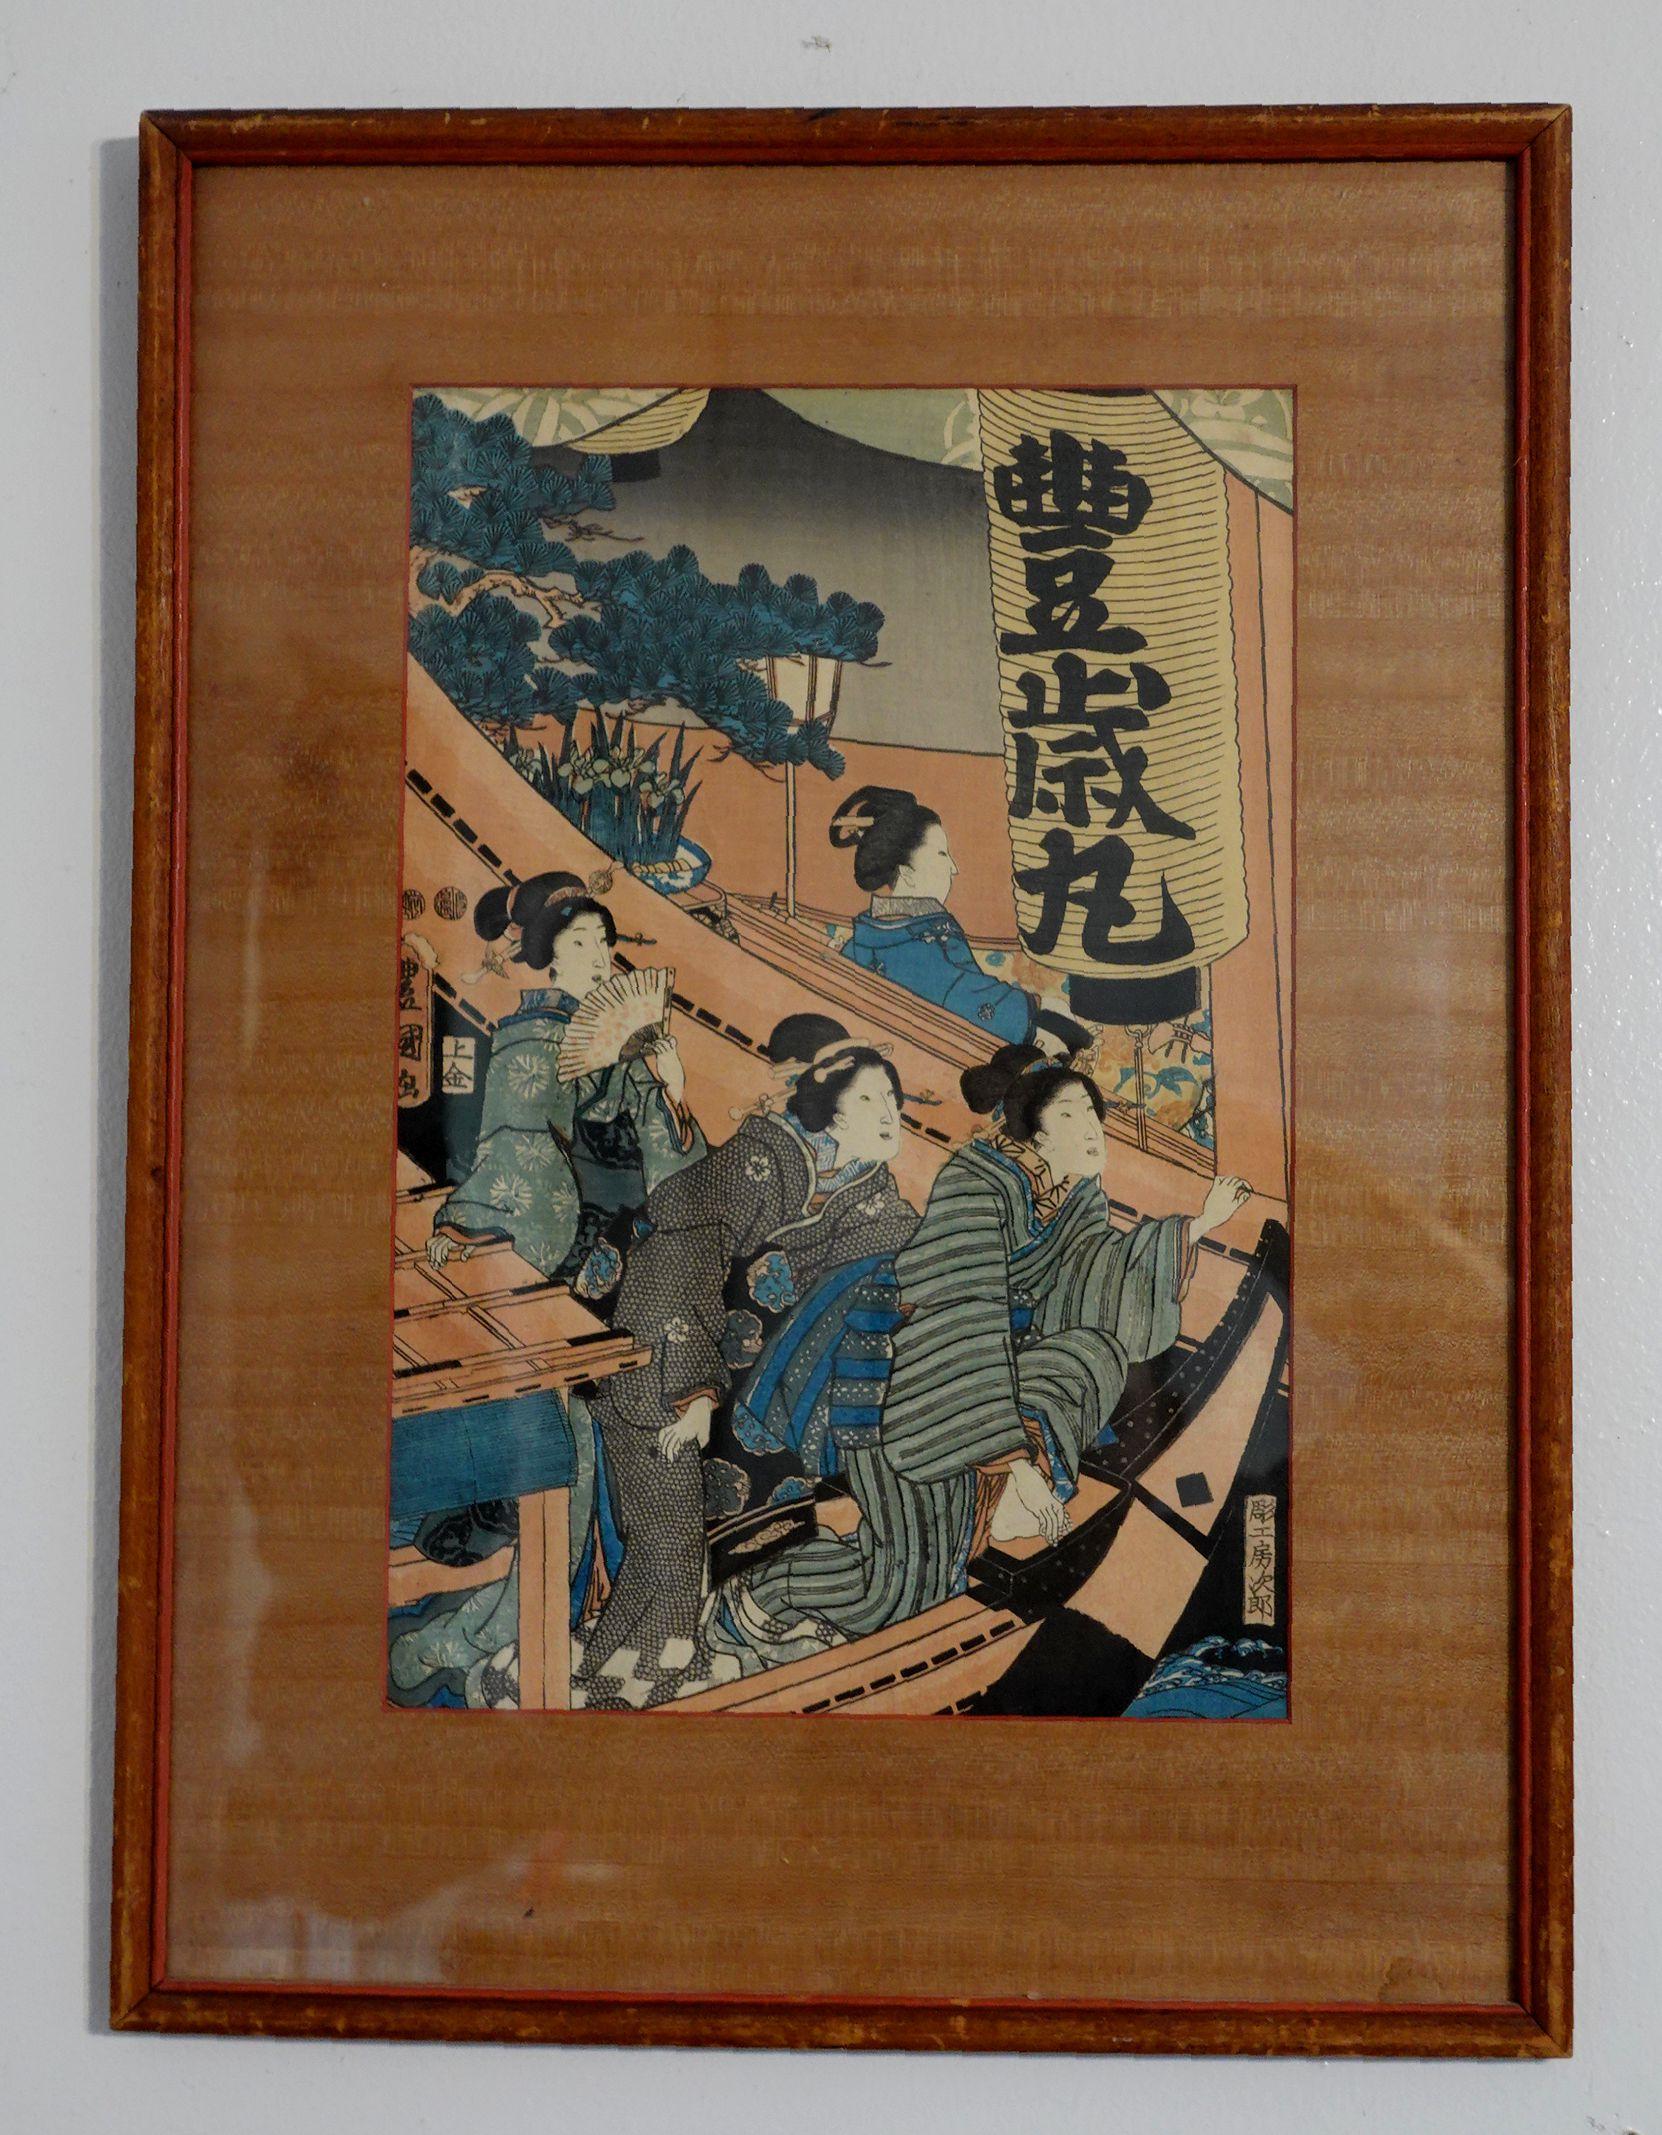 Une jeune femme dans une maison en ruine, gravure d'Utagawa Toyokuni III (1786~1964), 三代歌川豊国.

À PROPOS DE L'ARTISTE
Utagawa Kunisada (japonais : 歌川 国貞 ; 1786 - 12 janvier 1865), également connu sous le nom d'Utagawa Toyokuni III (三代 歌川 豊国, Sandai